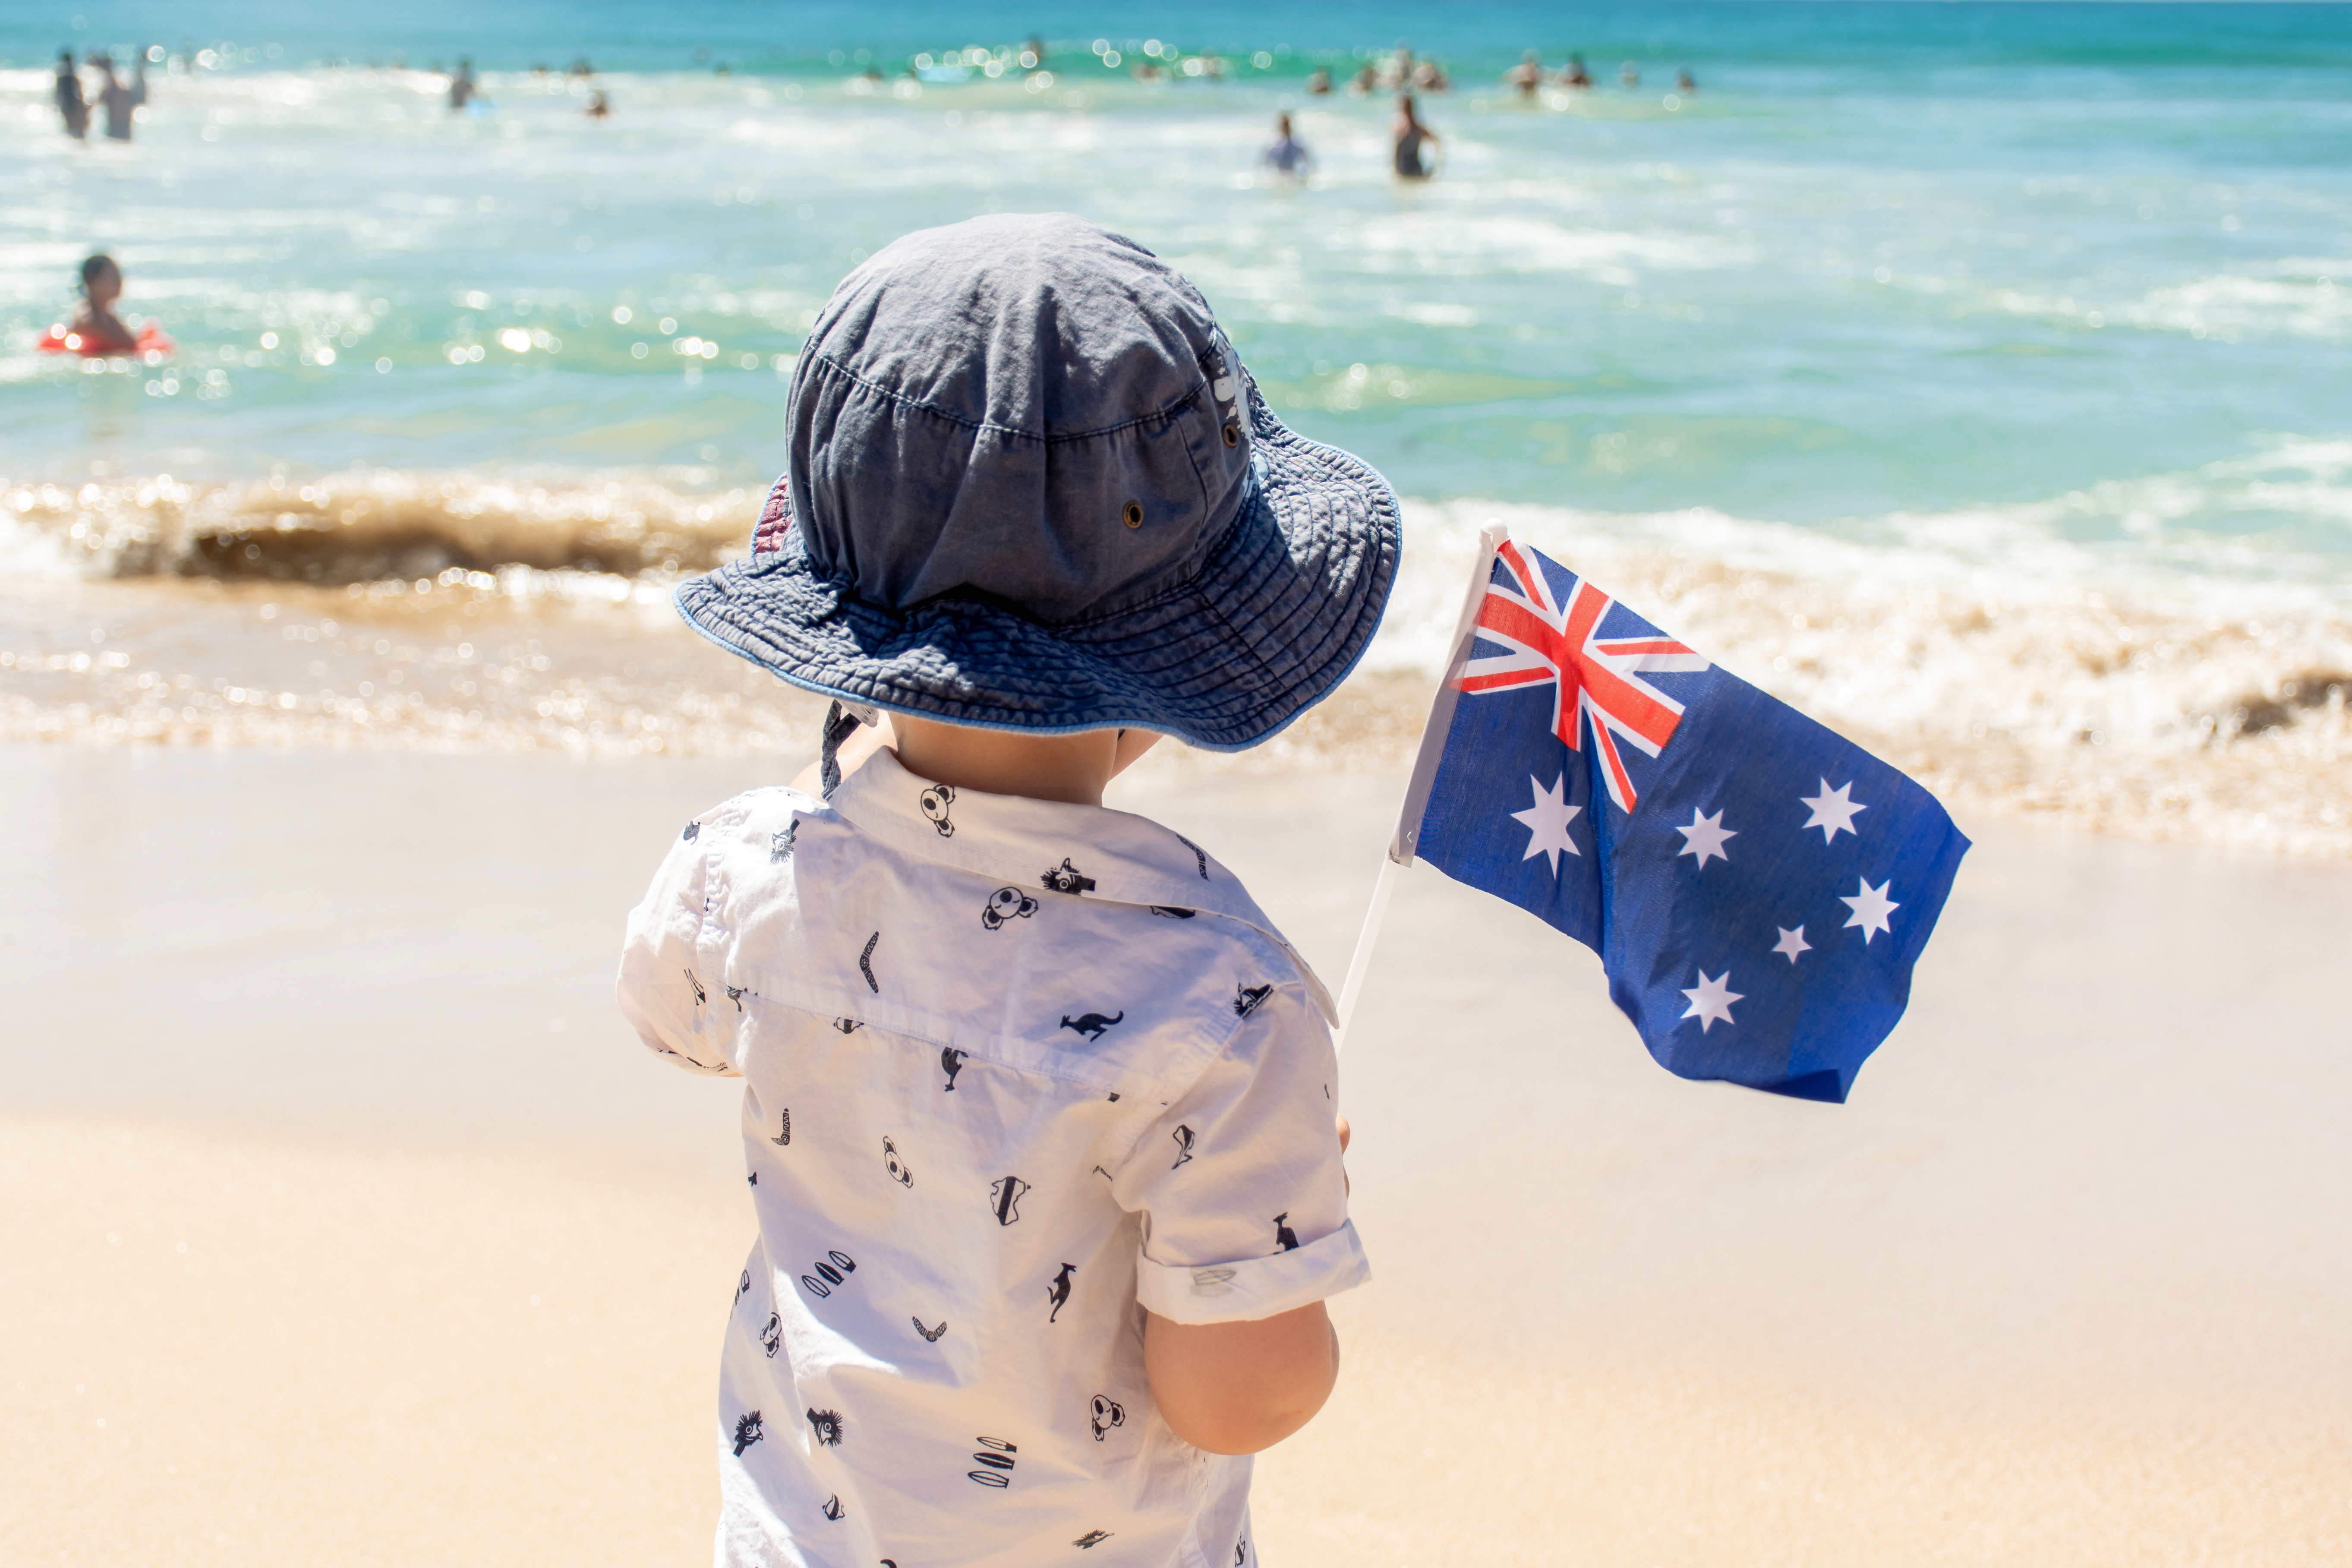 Little boy with Australian flag near the ocean. Australia Day concept